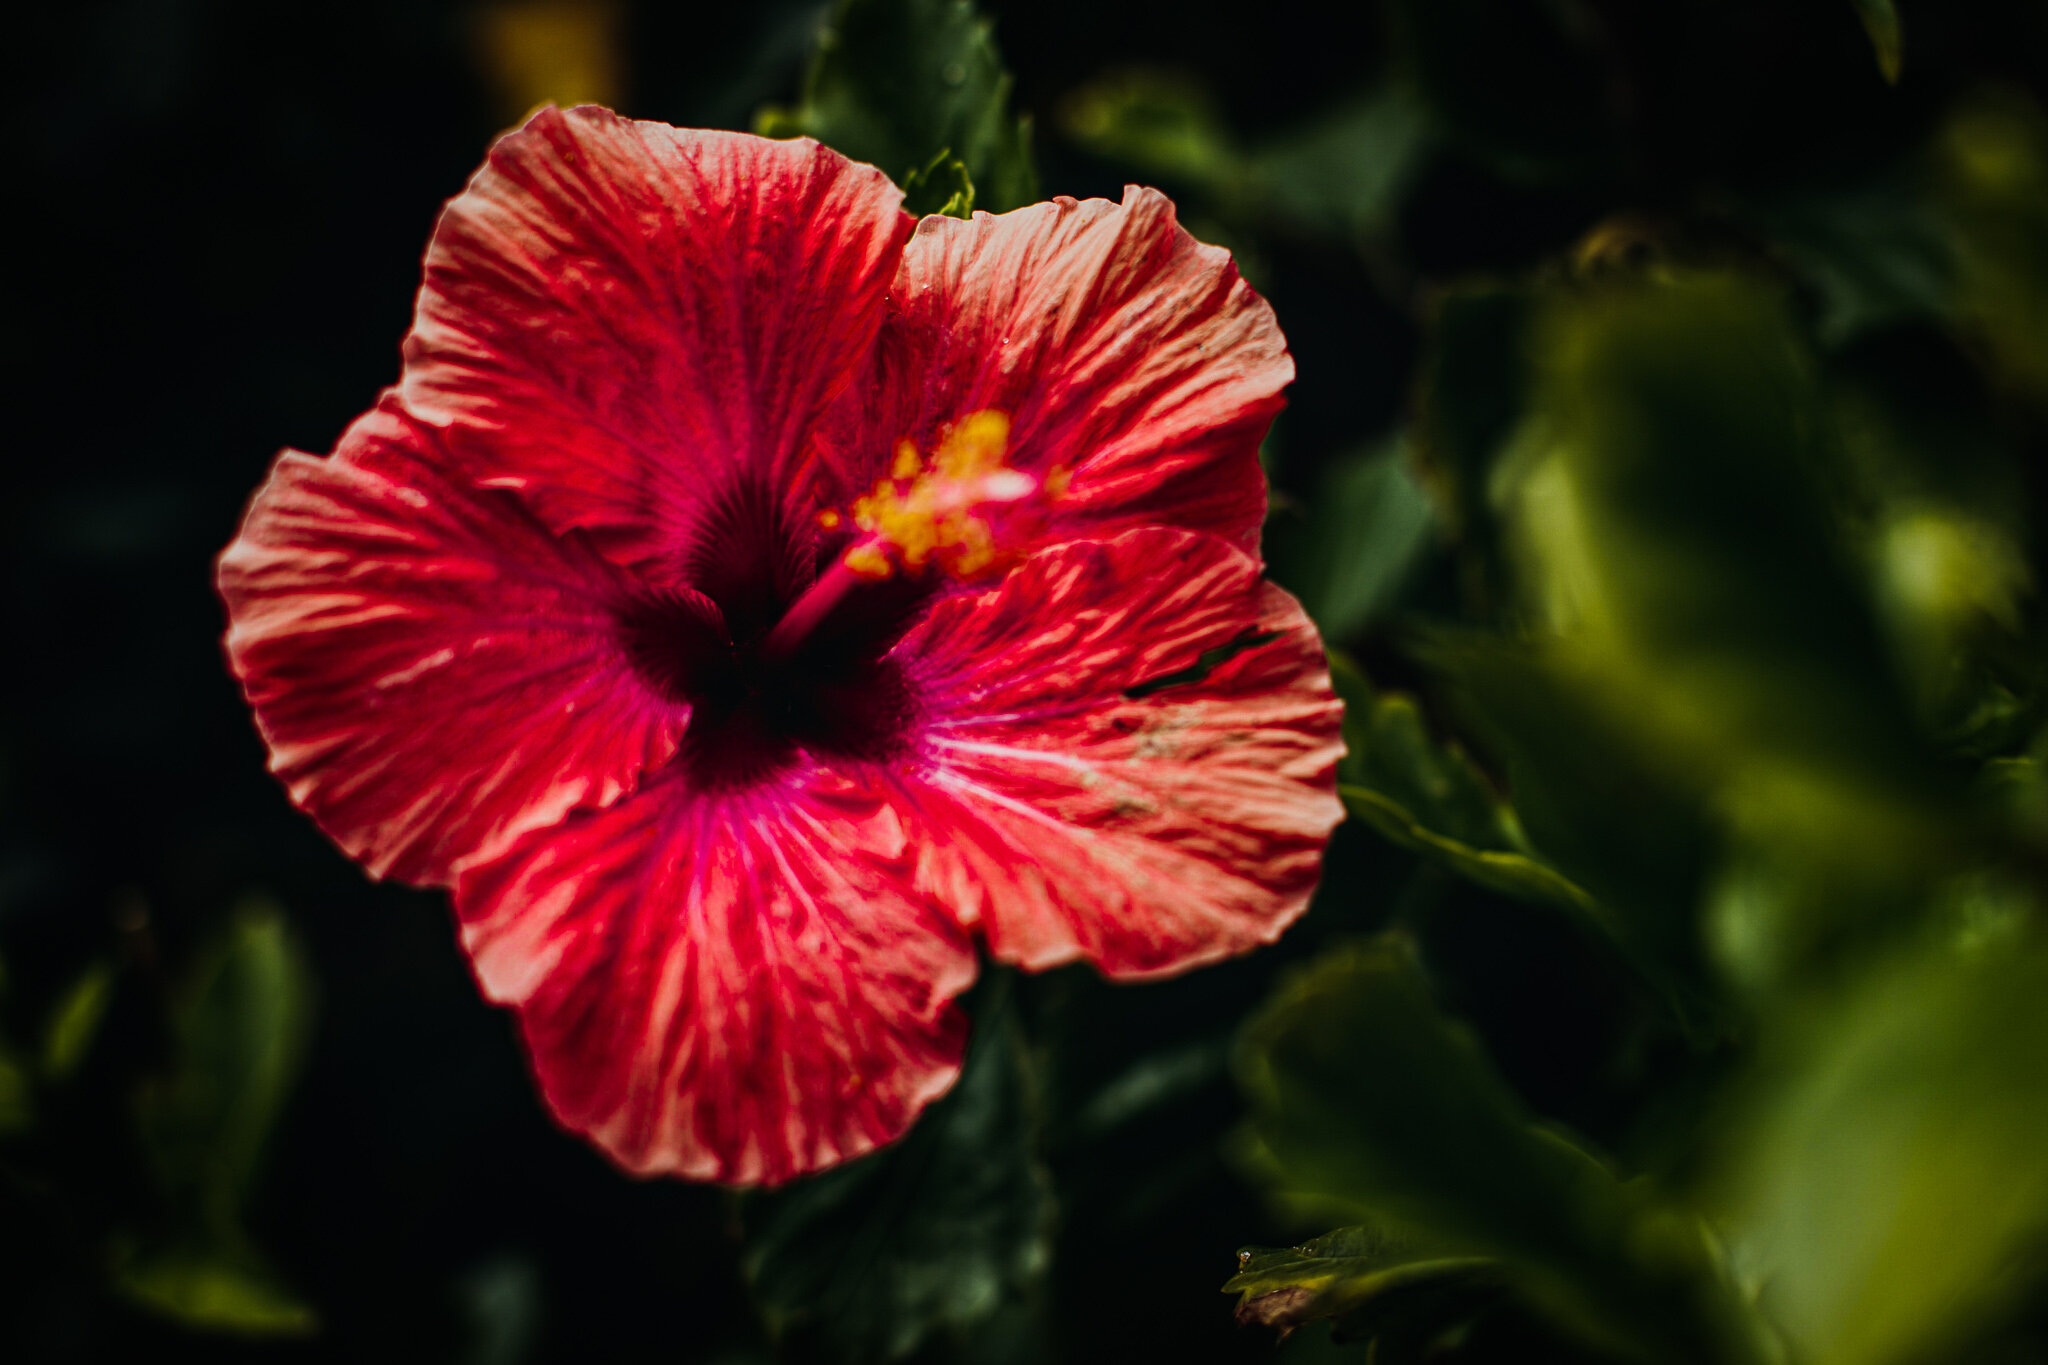 Hibisco | Flor de Jamaica — Desirée Piña · Bienestar Holístico